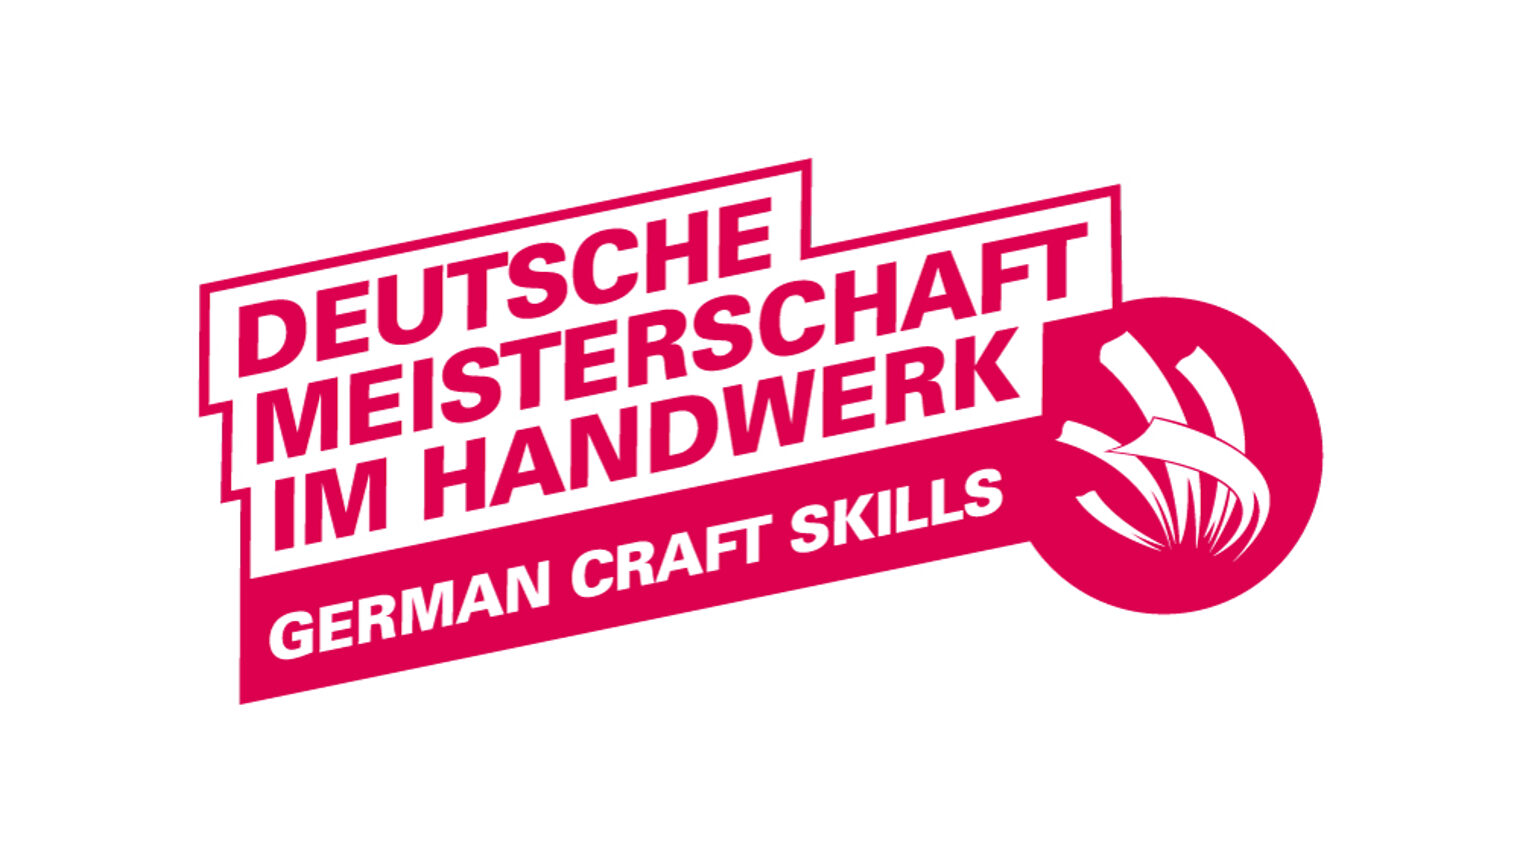 Deutsche Meisterschaft im Handwerk_logo_DMH_rgb_web_1000px